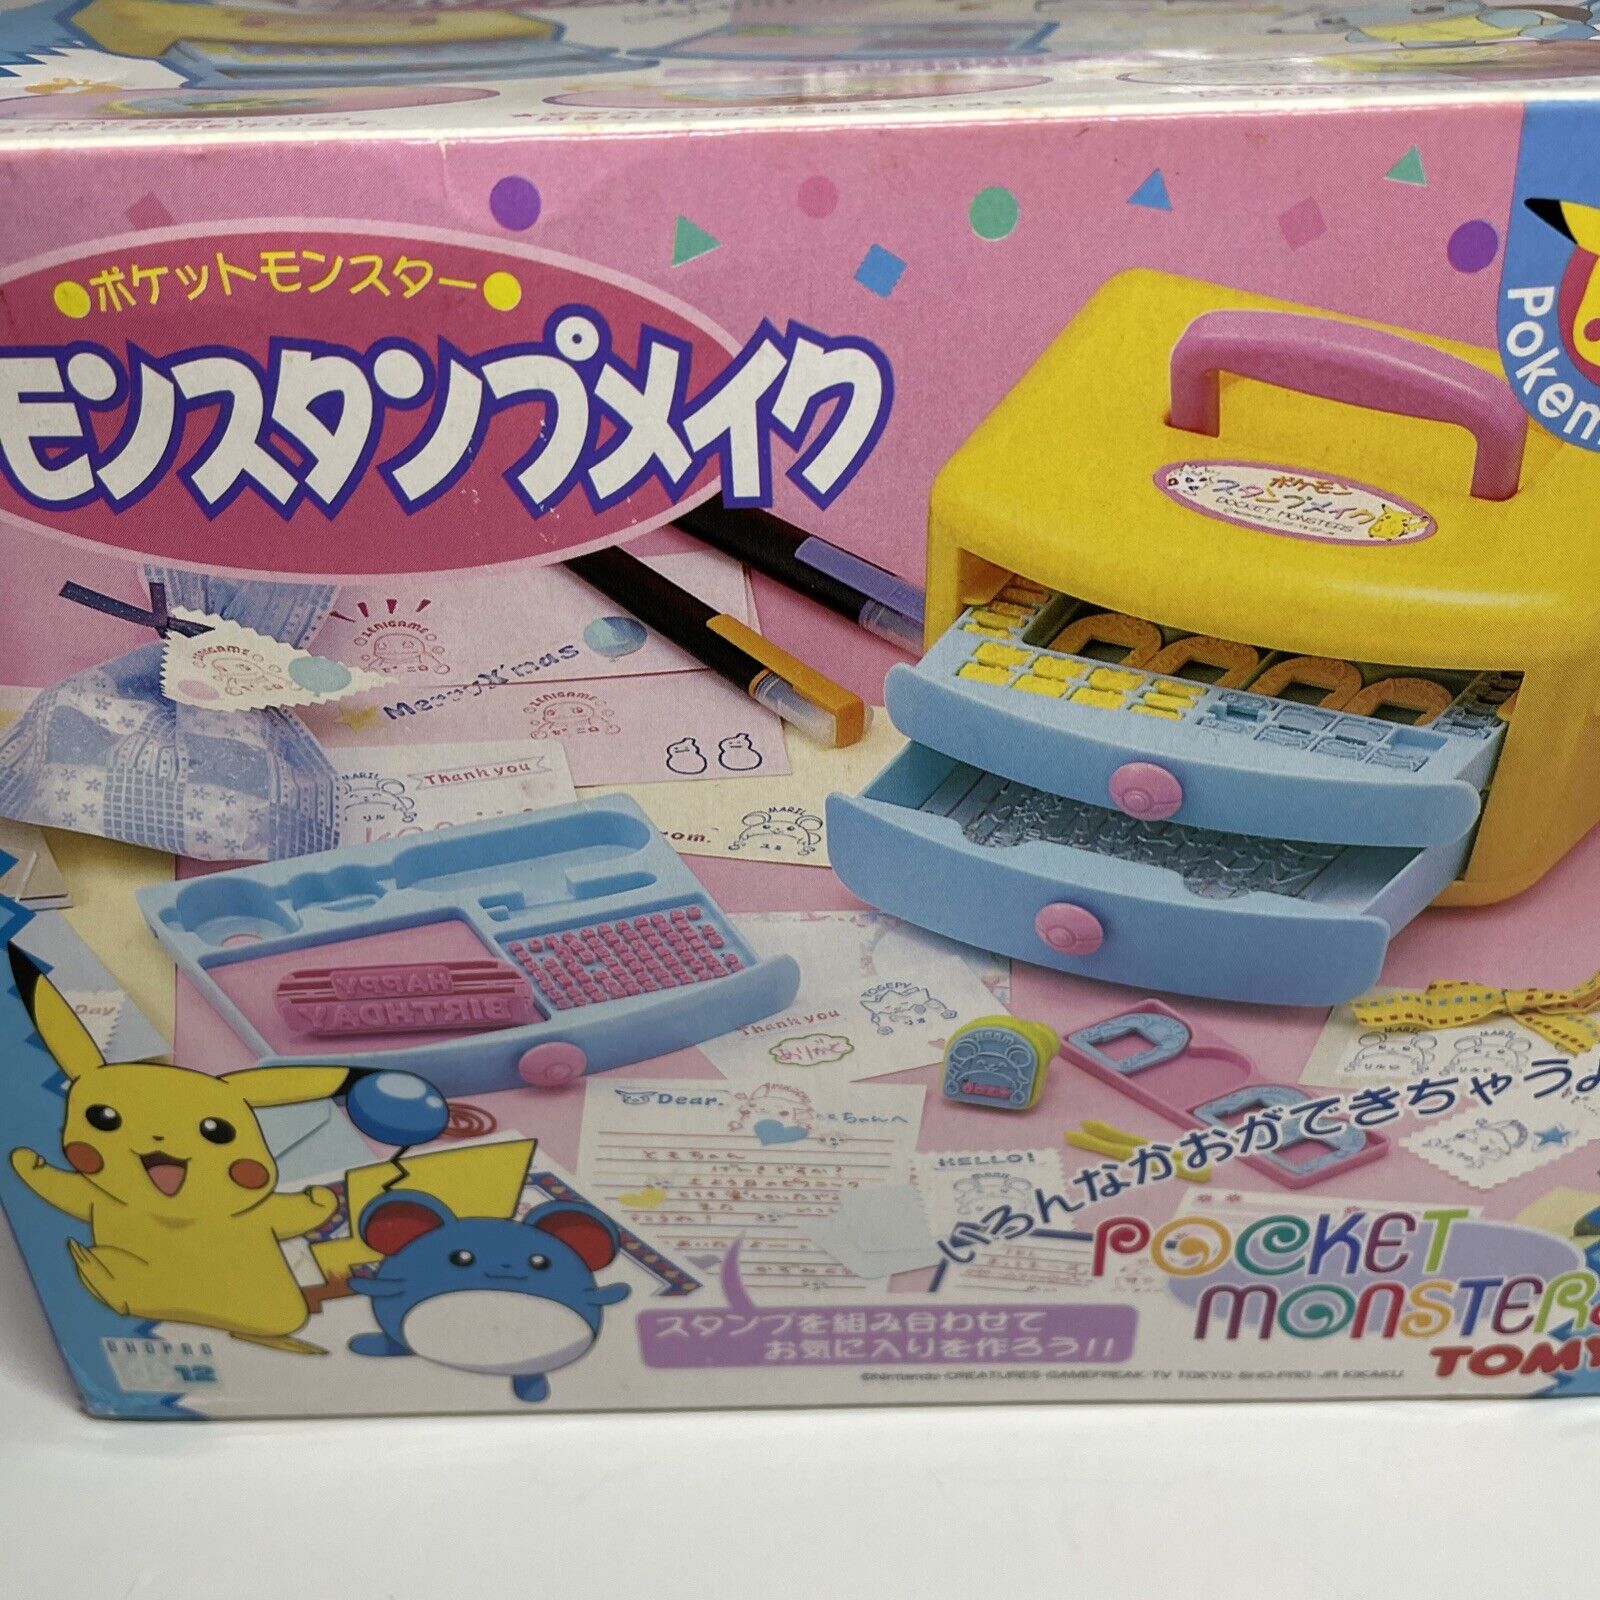 TOMY Pocket Monster Pokemon Stamp Make Kit Pikachu Squirtle Togepi Vintage